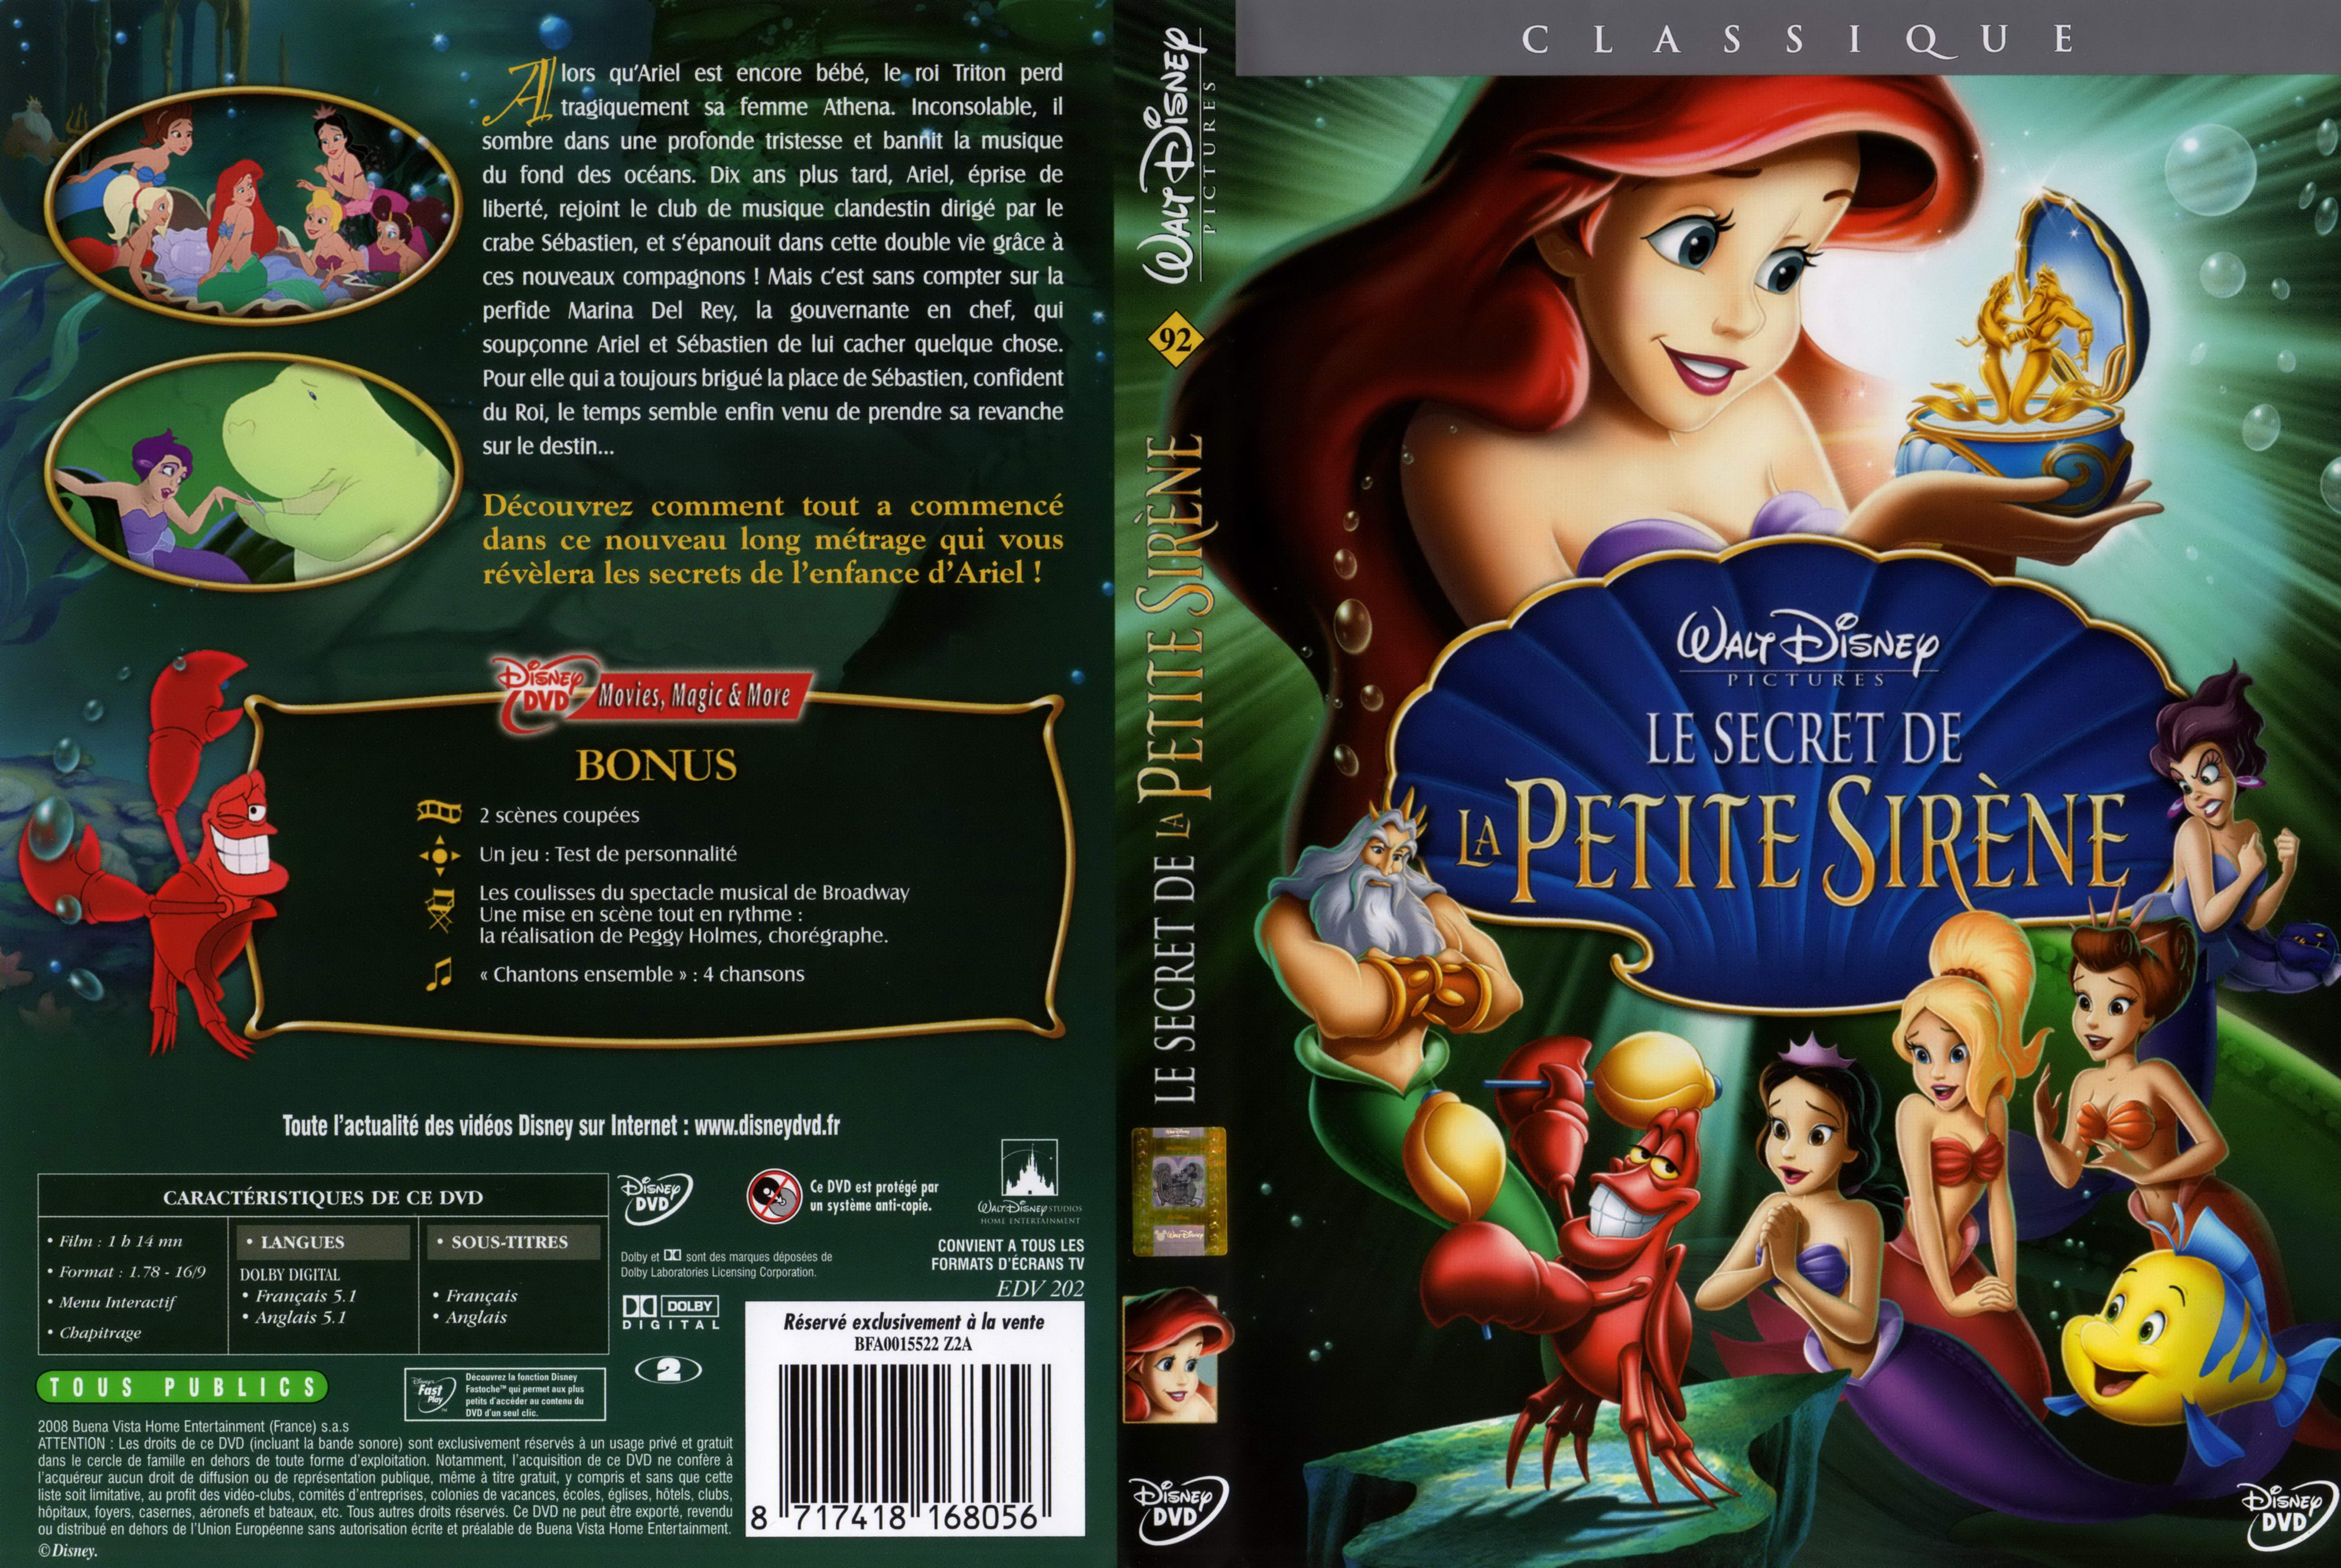 Jaquette DVD Le secret de la petite sirene v2